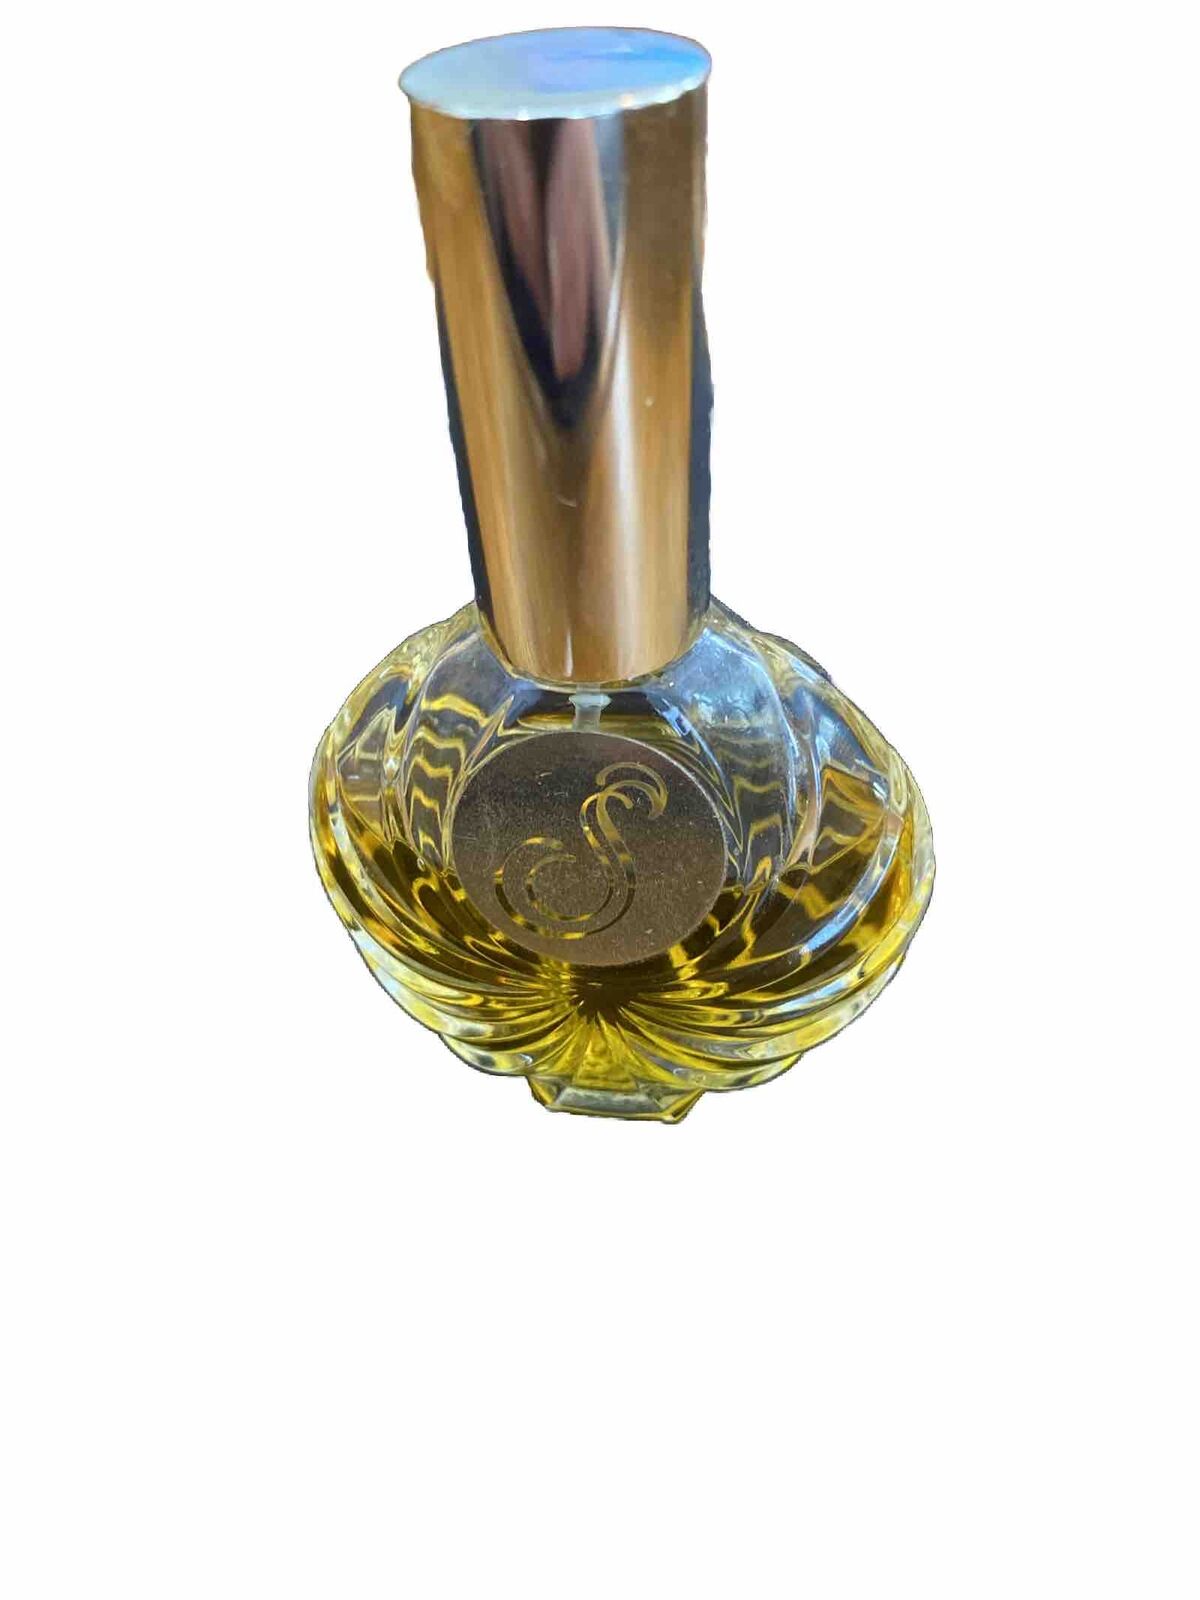 Serene Perfume Melaleuca 1oz Spray Roughly 80-85% Full Fragrance Fresh Vintage